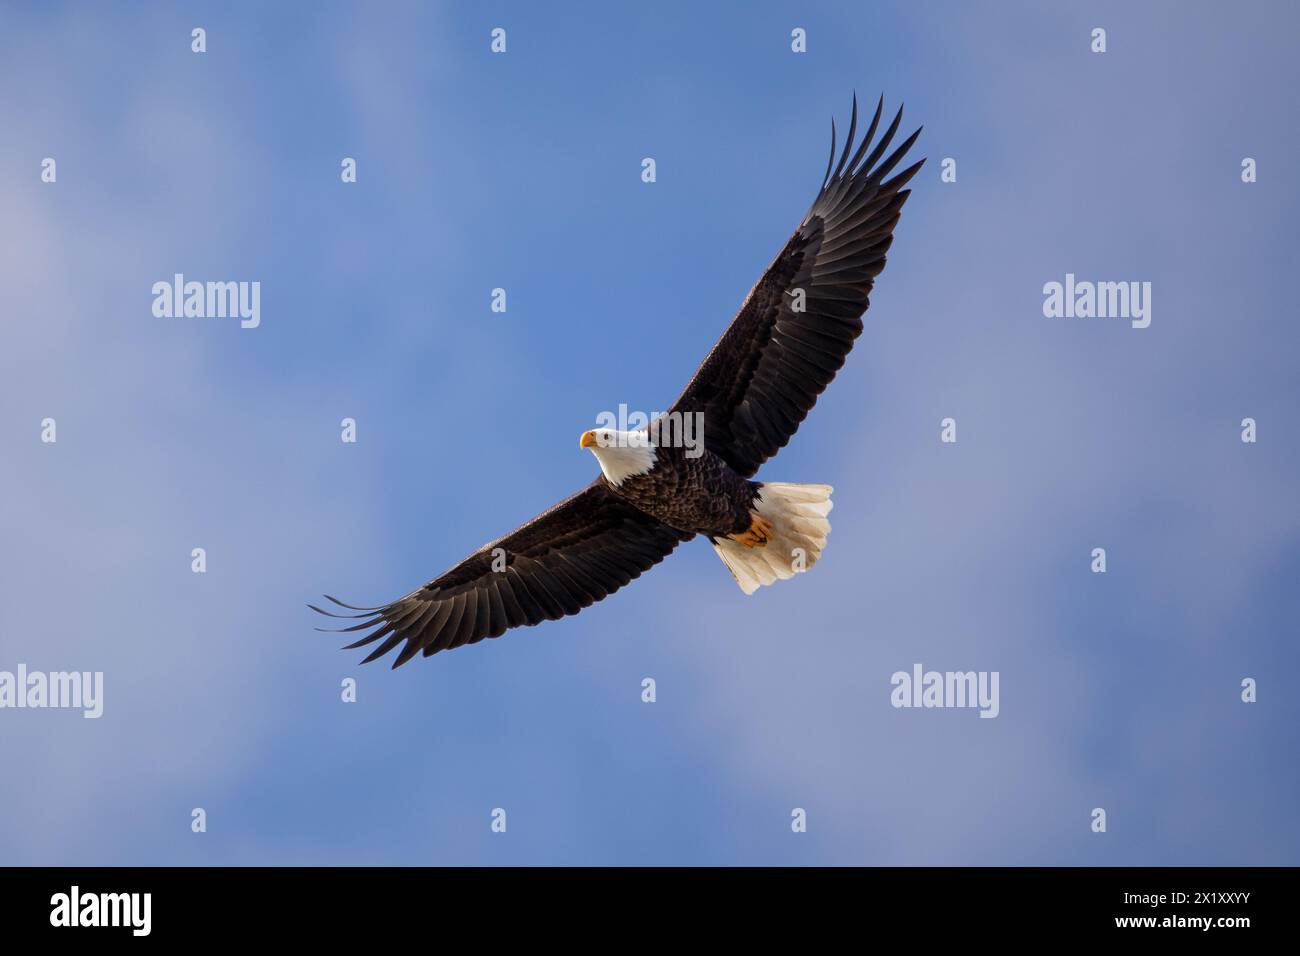 Adler, der in einem bewölkten Himmel hoch über dem Himmel schwingt Stockfoto